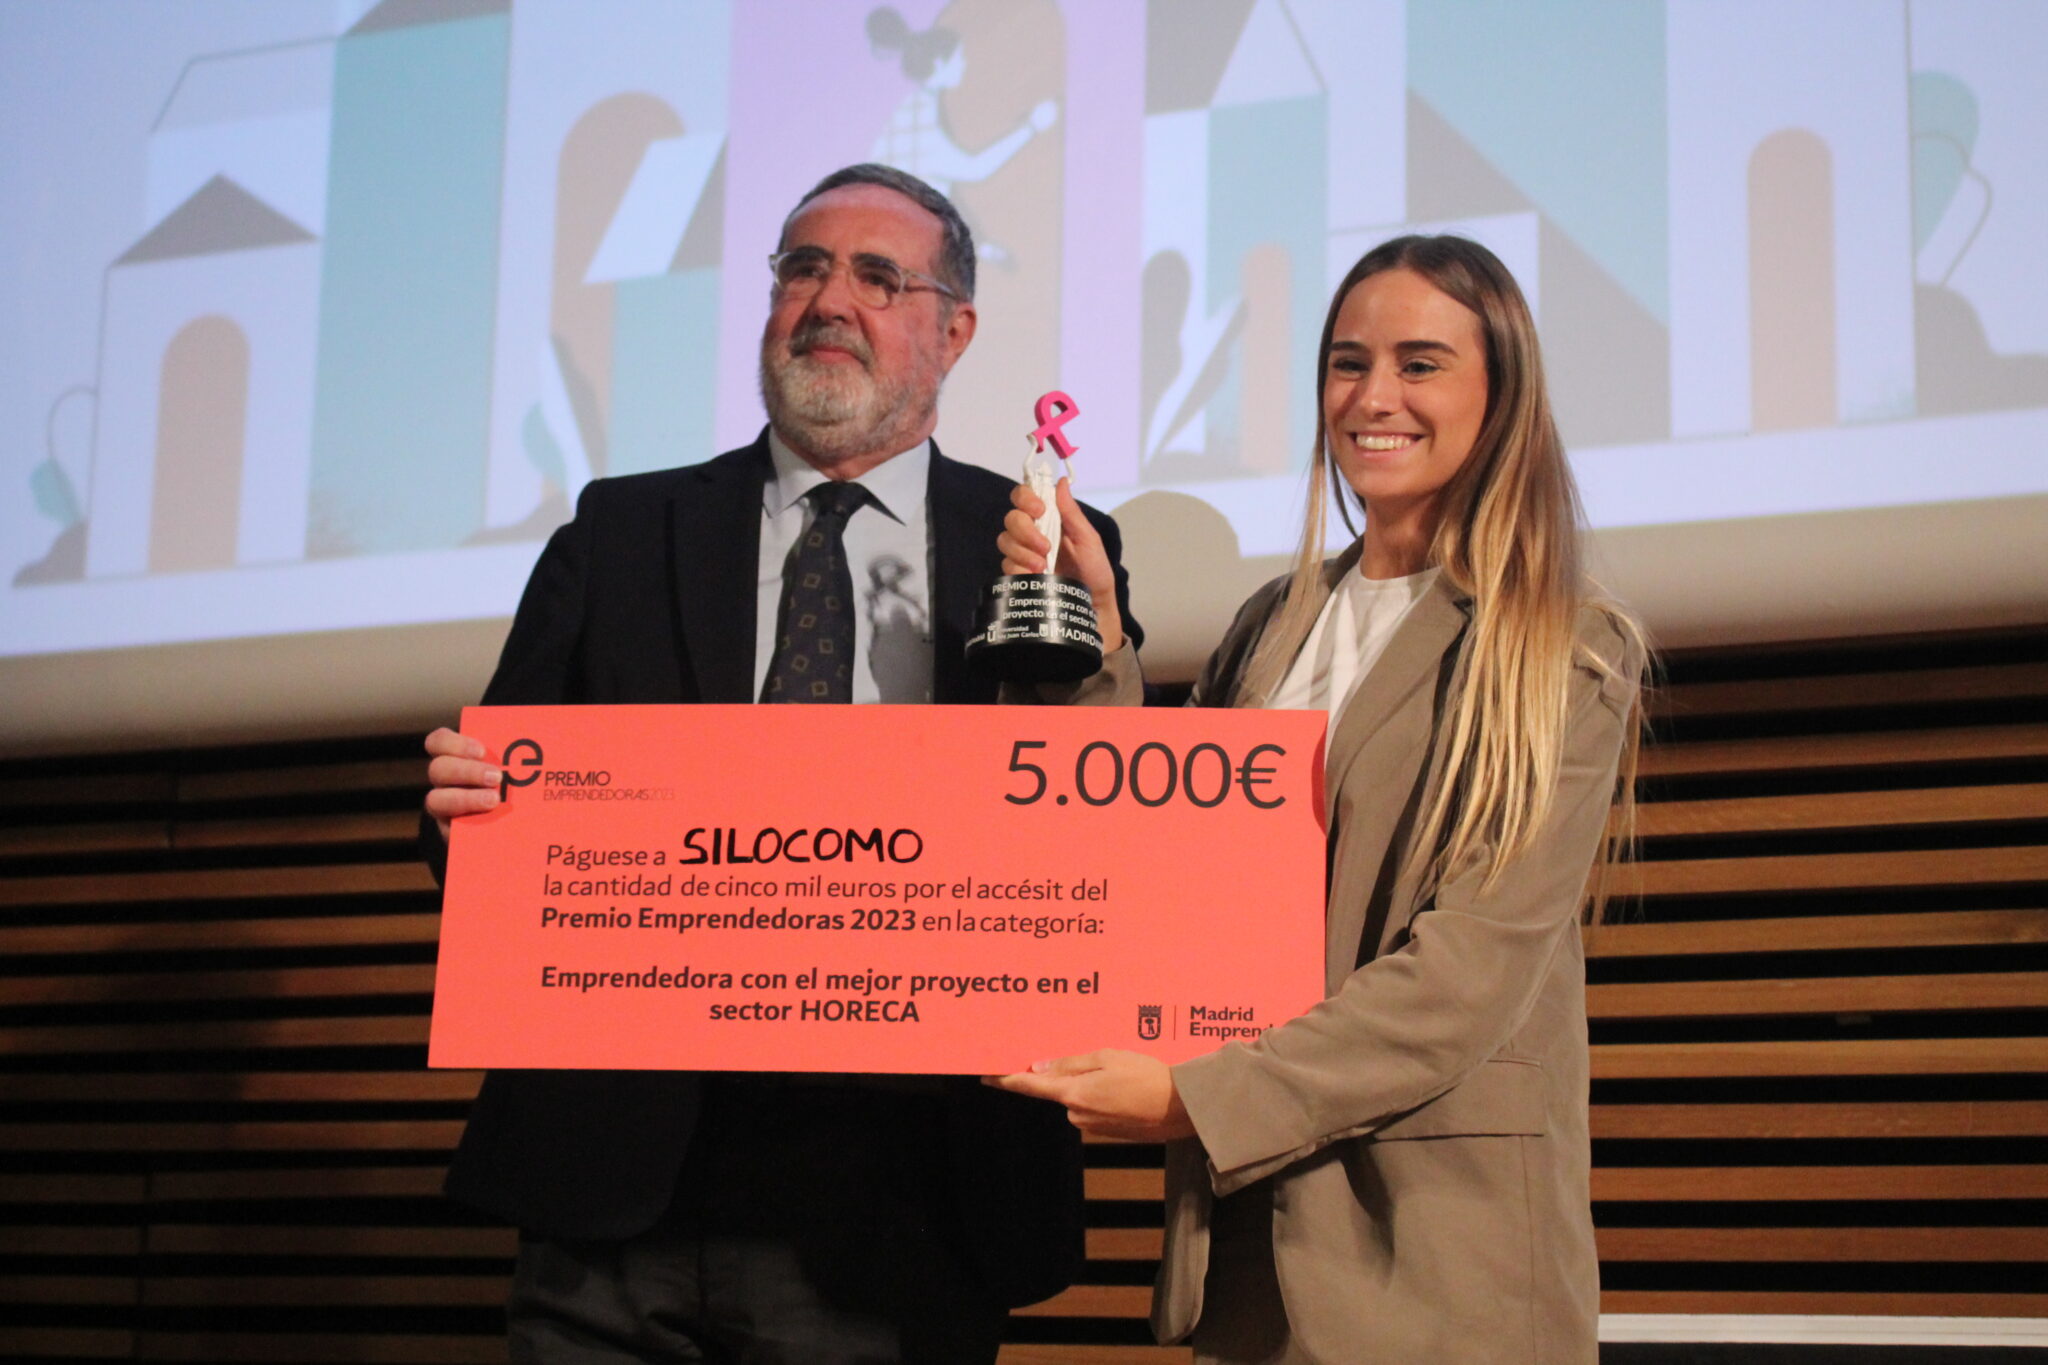 Claudia Cambra con la startup Silocomo recibe el premio emprendedoras 2023 en el accesit HORECA